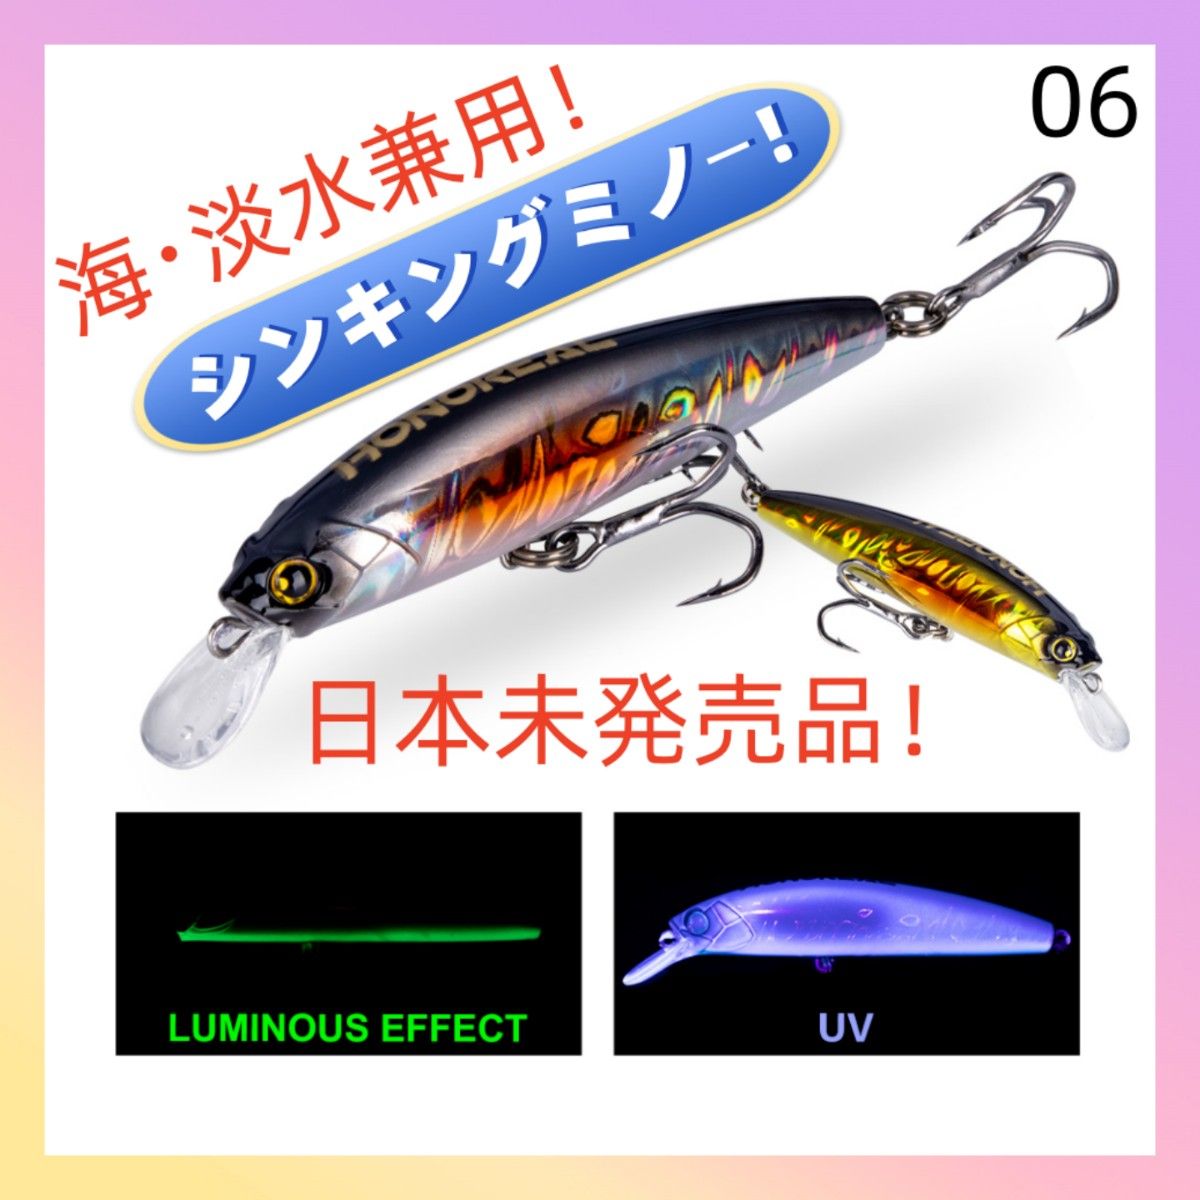 シンキングミノー 85mm 28g【海・淡水兼用】 ルアー 釣り